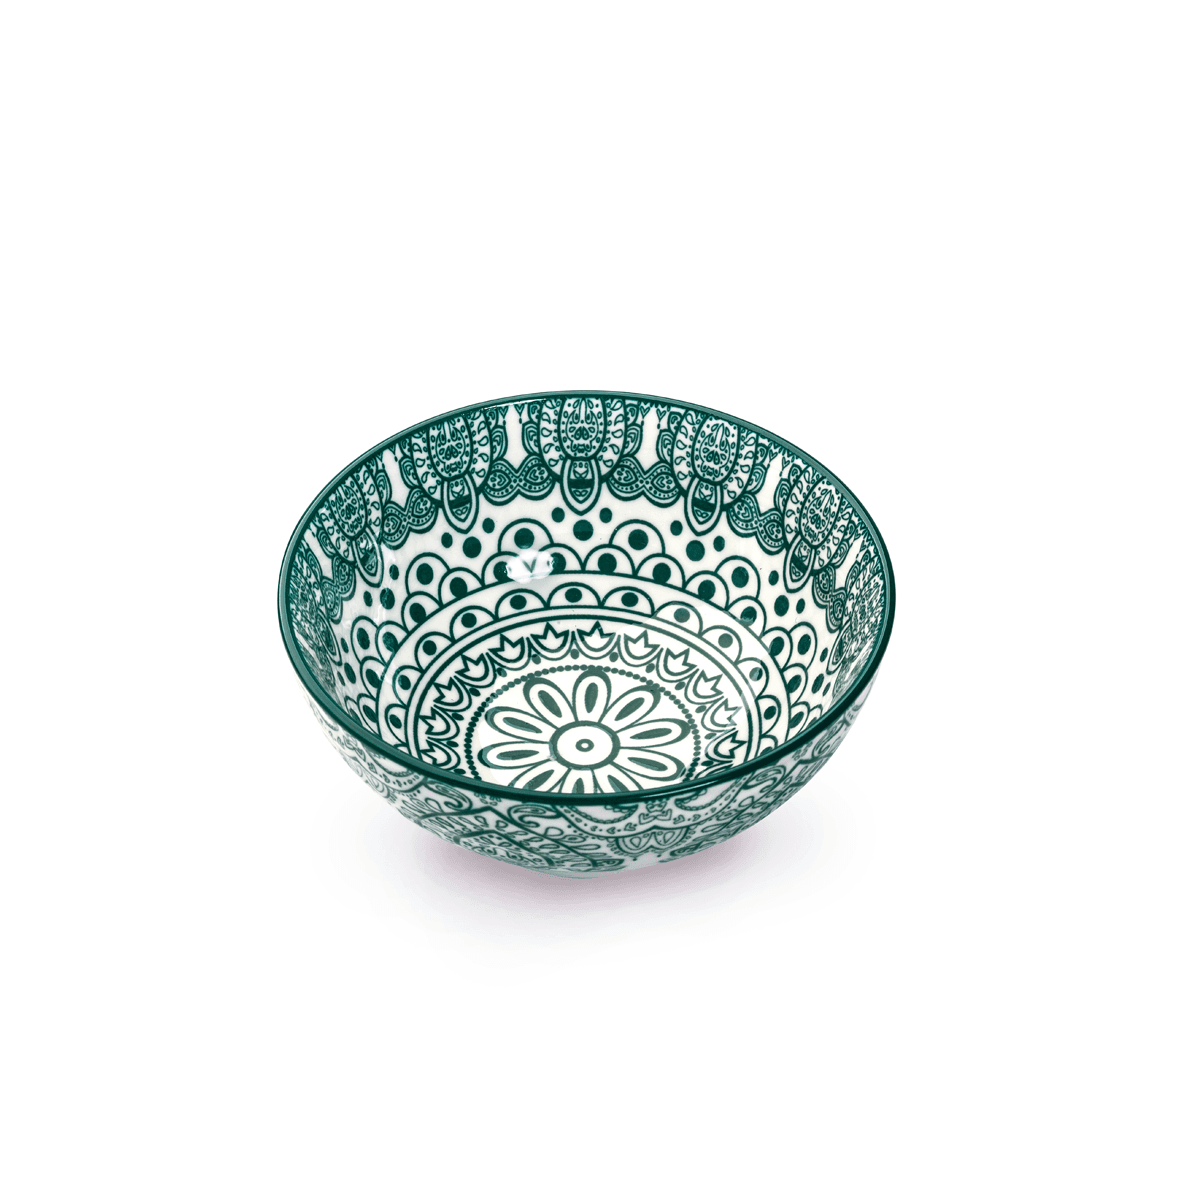 Che Brucia Arabesque Green Porcelain Bowl 12 cm / 5" Green White Porcelain